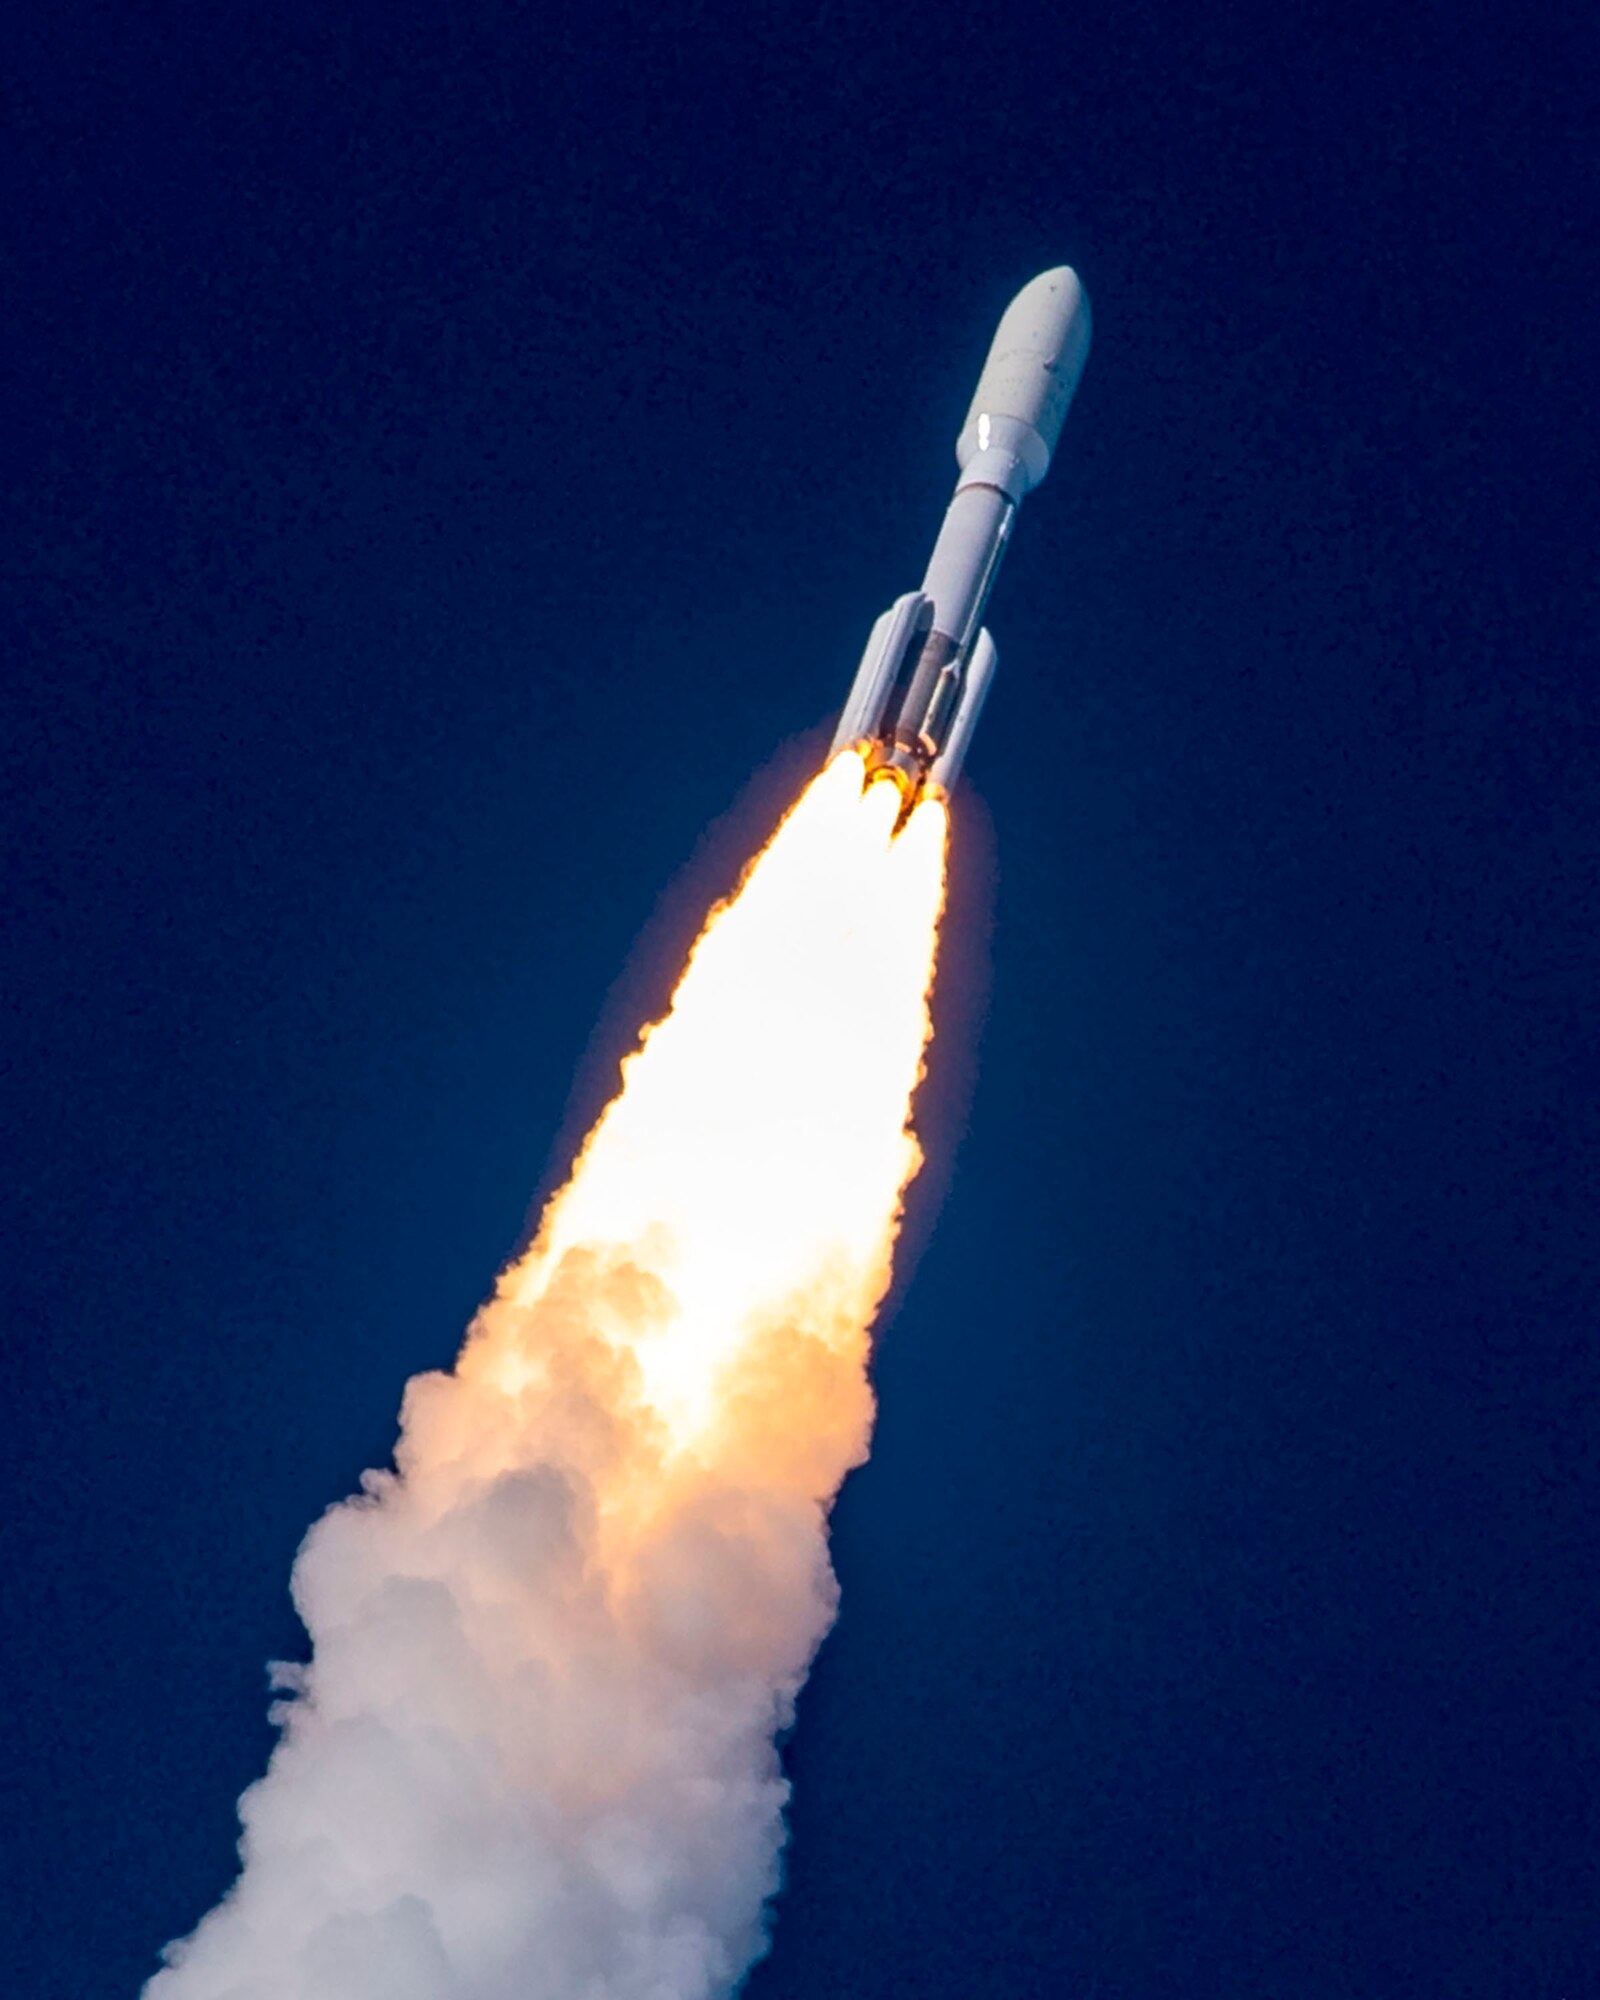 AEHF-6 Launch